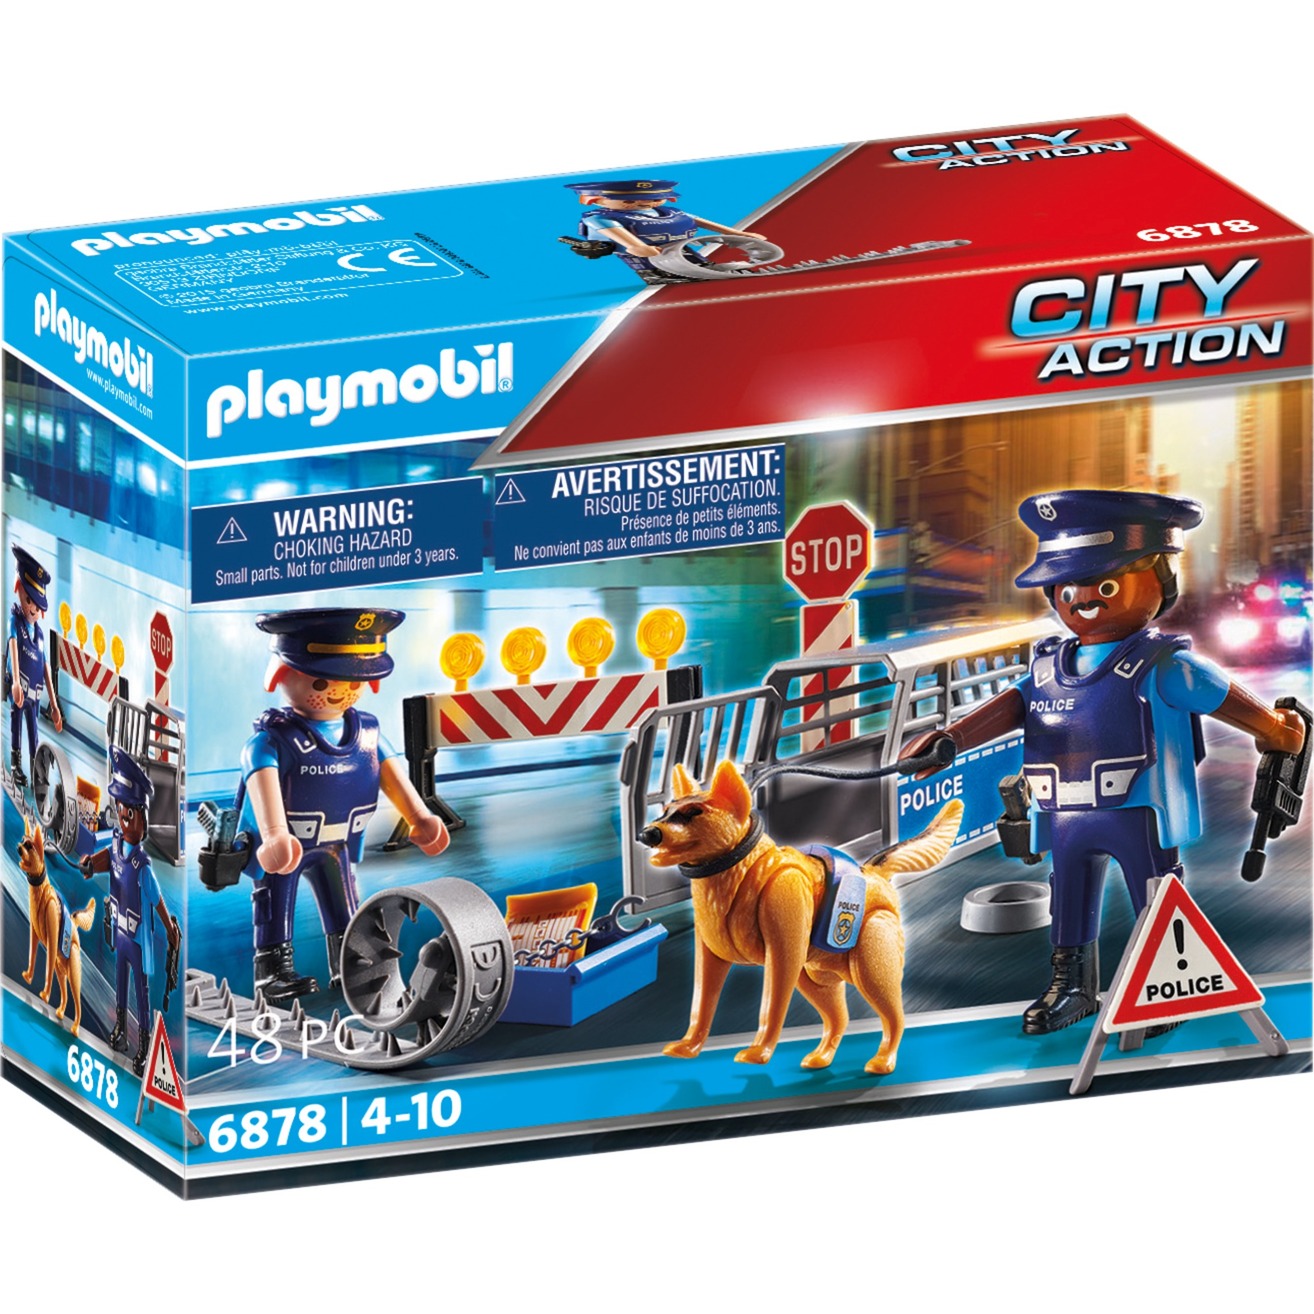 Spielzeug: PLAYMOBIL 6878 City Action - Polizei-Straßensperre